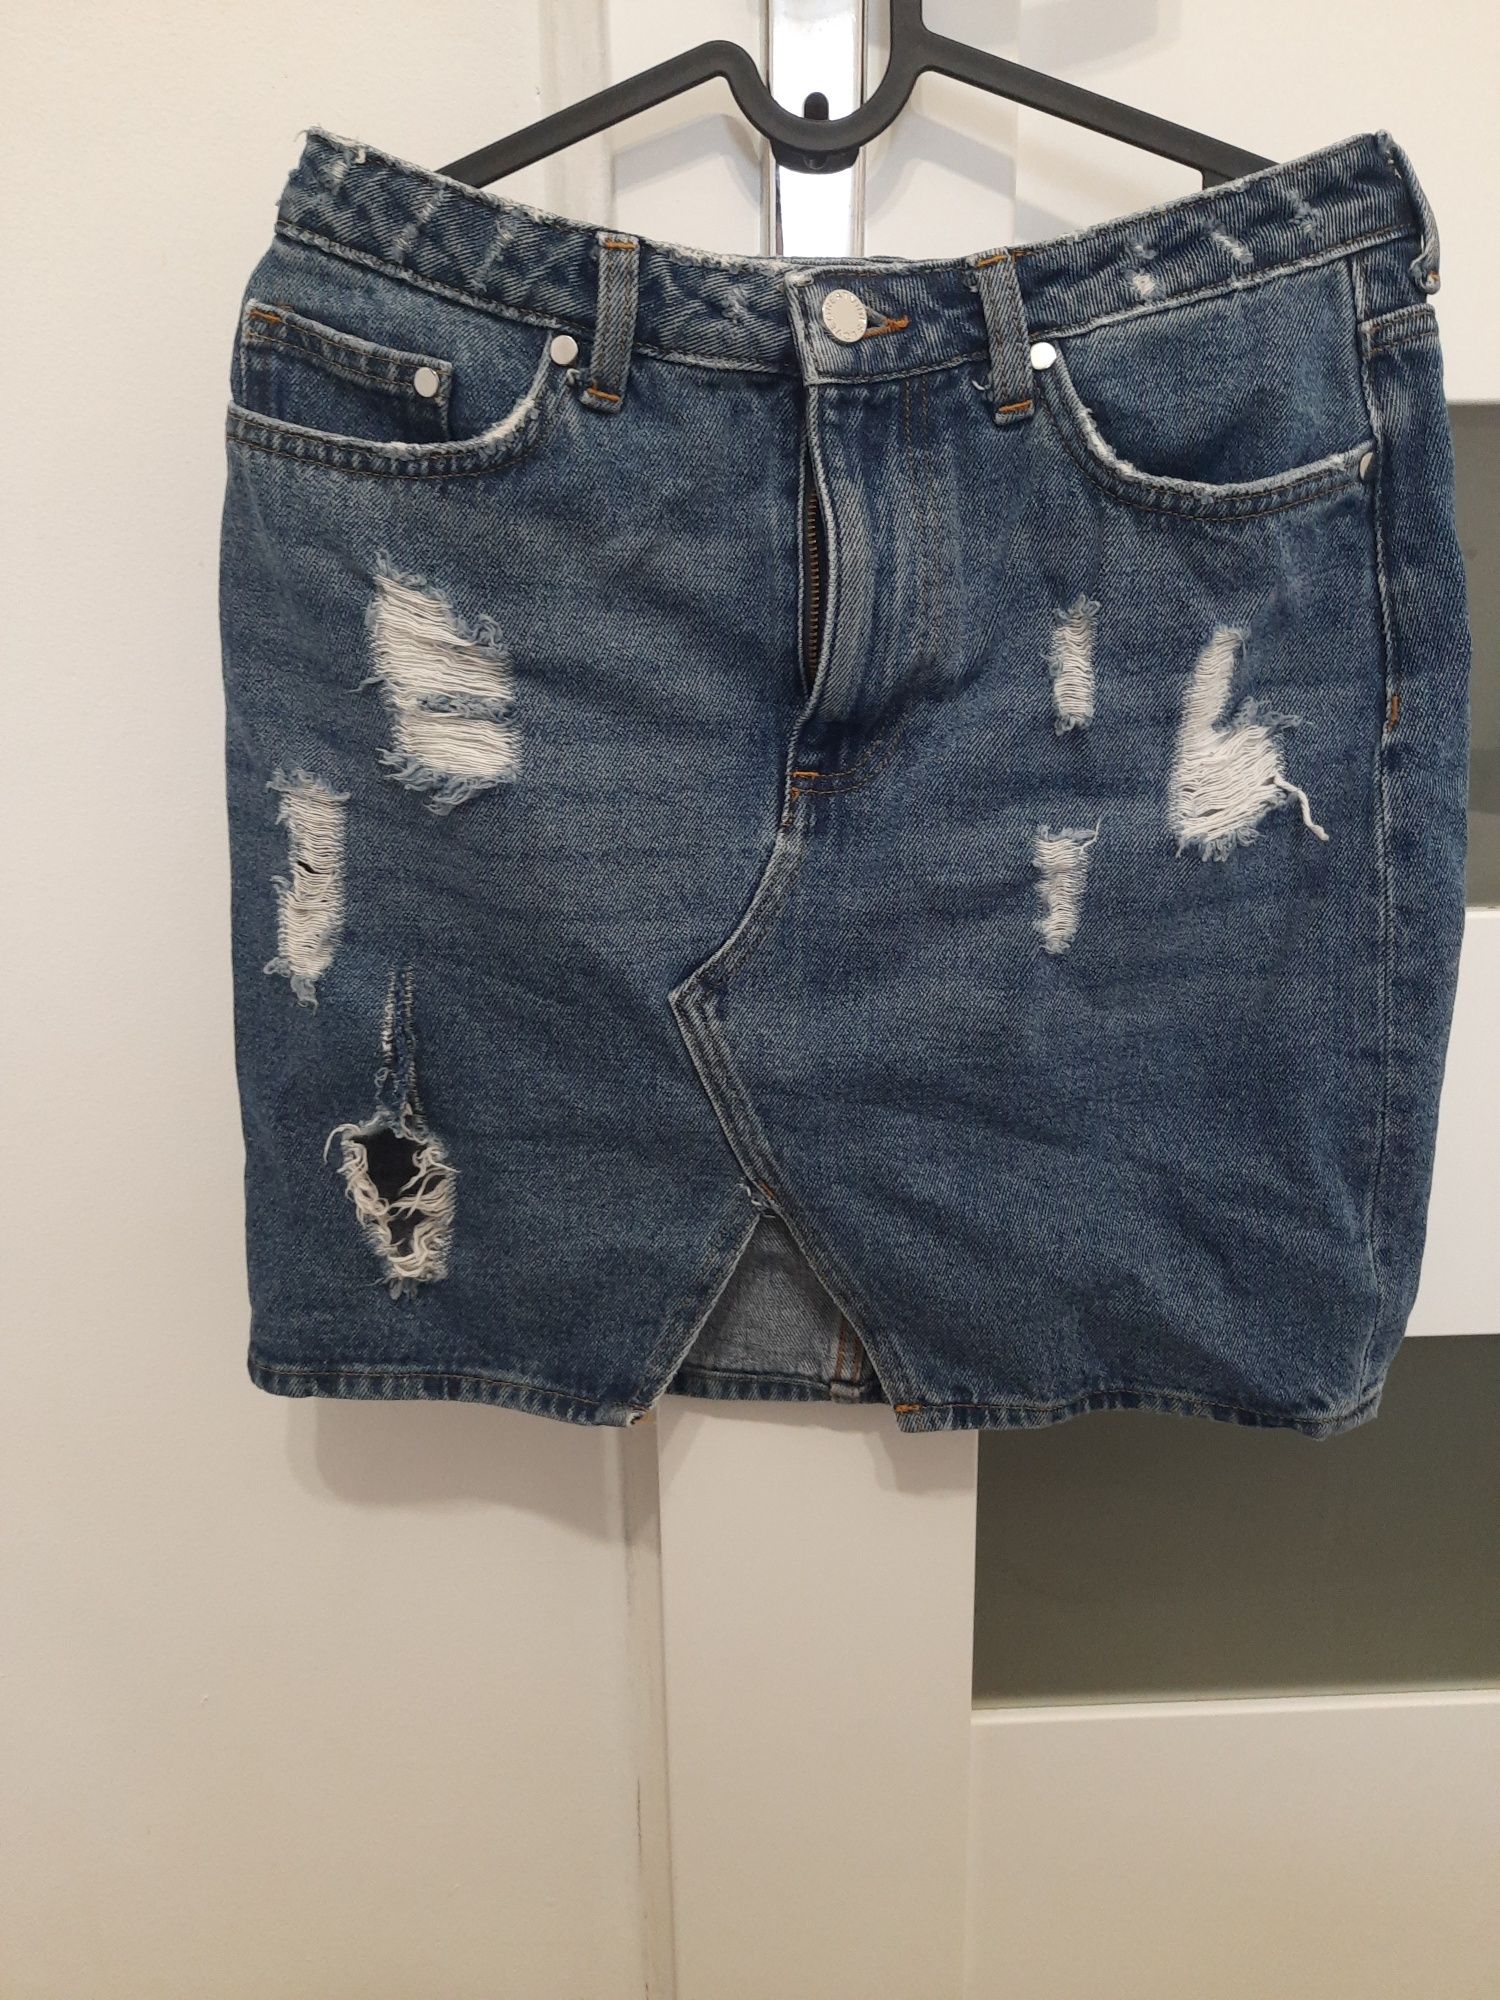 Spodnica h&m dziury jeans przetarcia